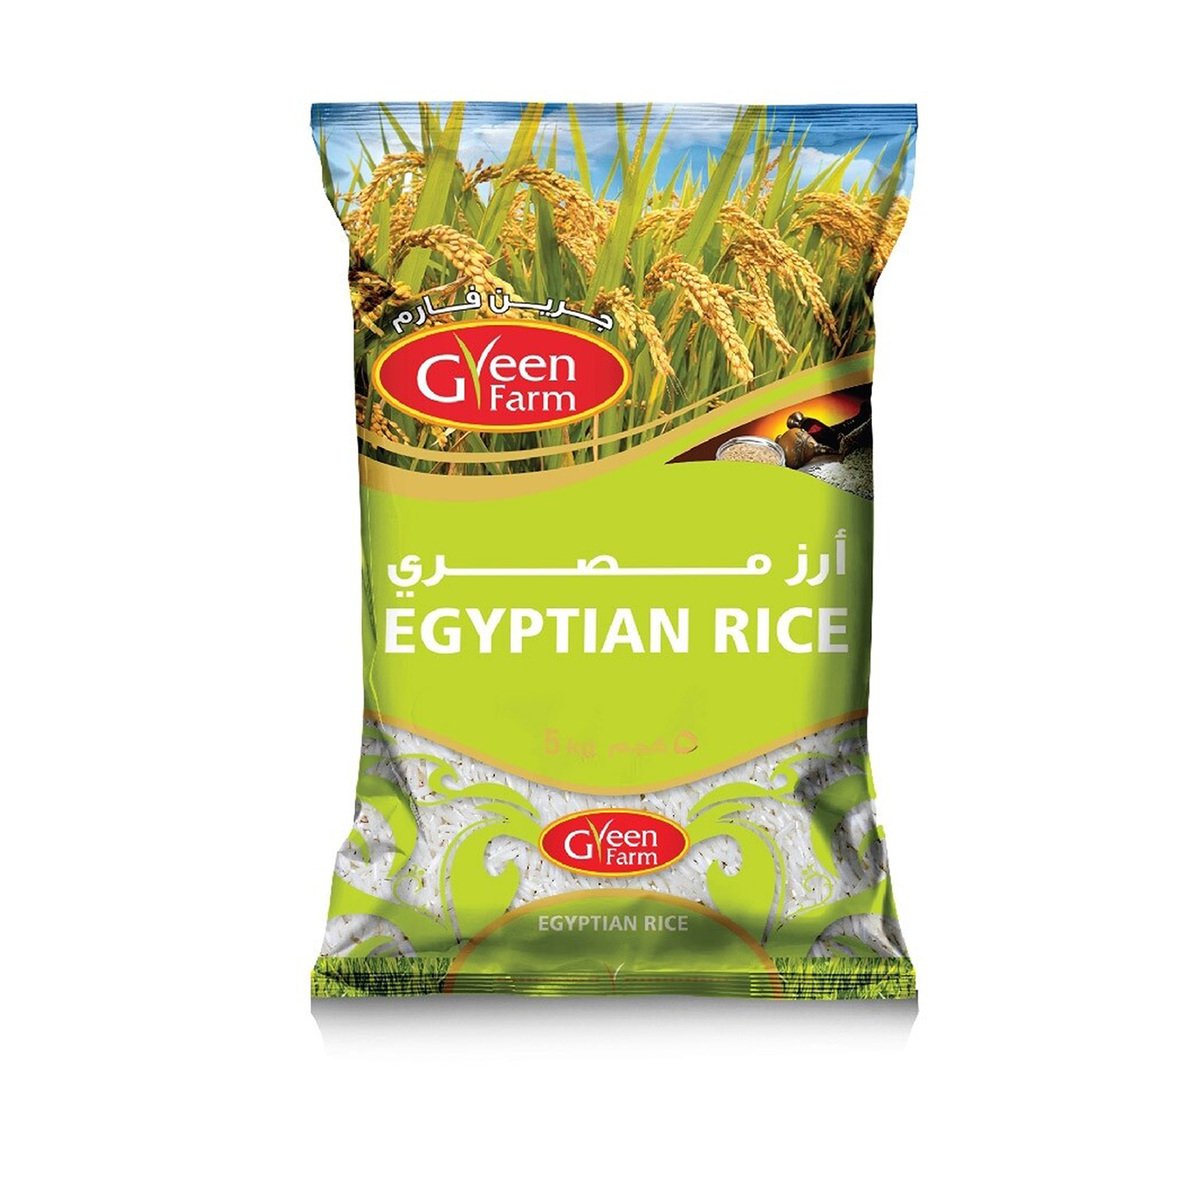 اشتري قم بشراء جرين فارم أرز مصري 5 كجم Online at Best Price من الموقع - من لولو هايبر ماركت Egyptian Rice في الامارات